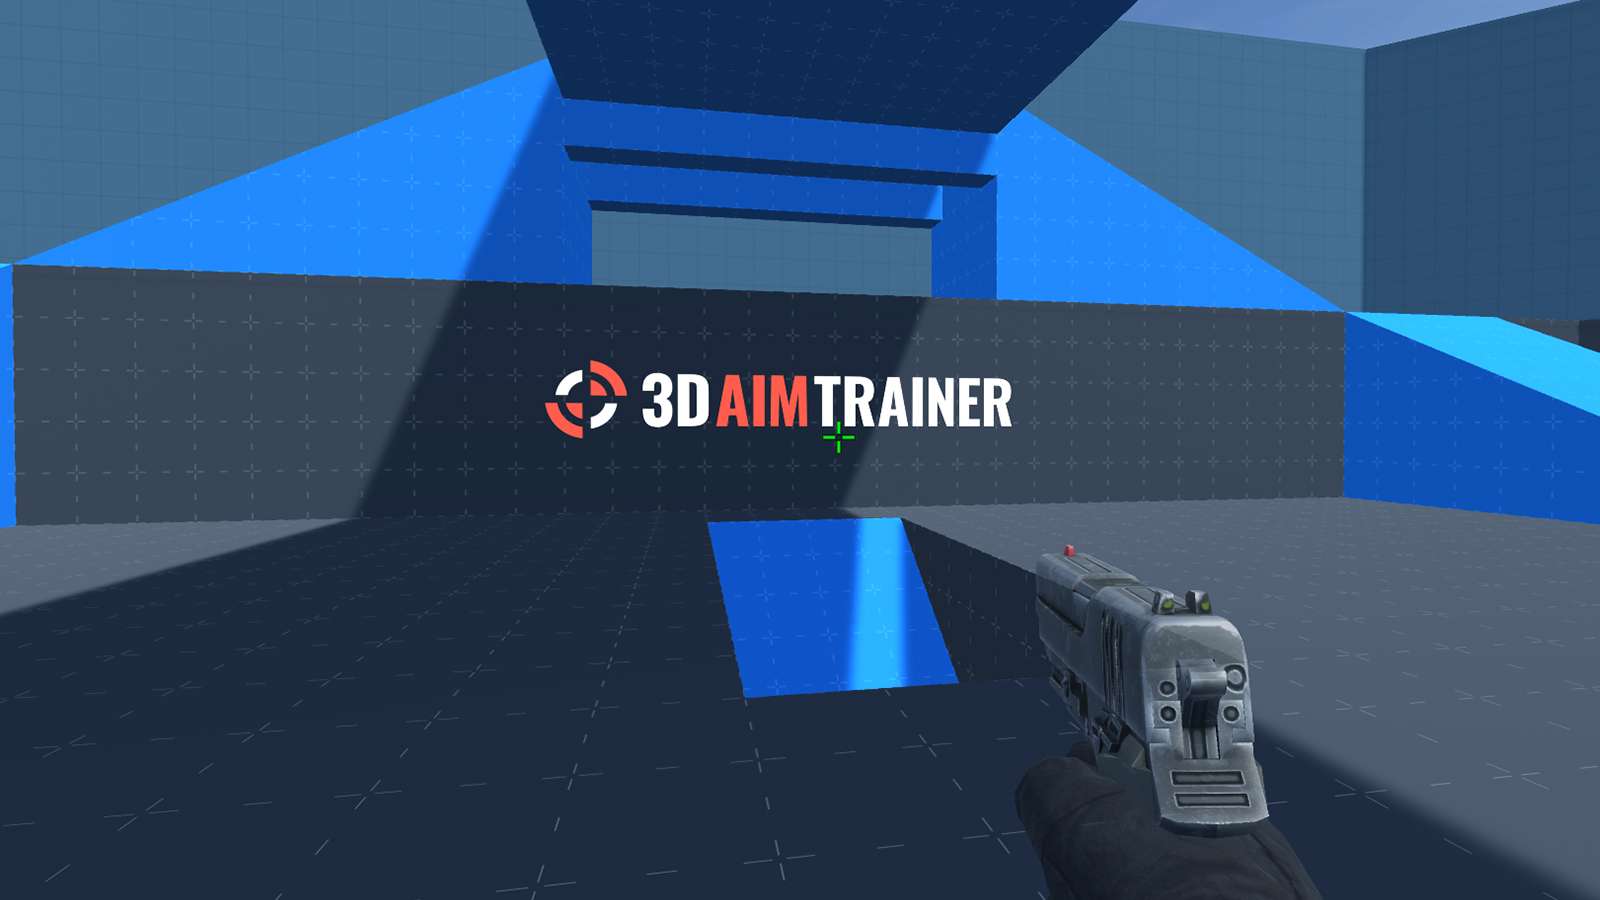 3D Aim Trainer Logo